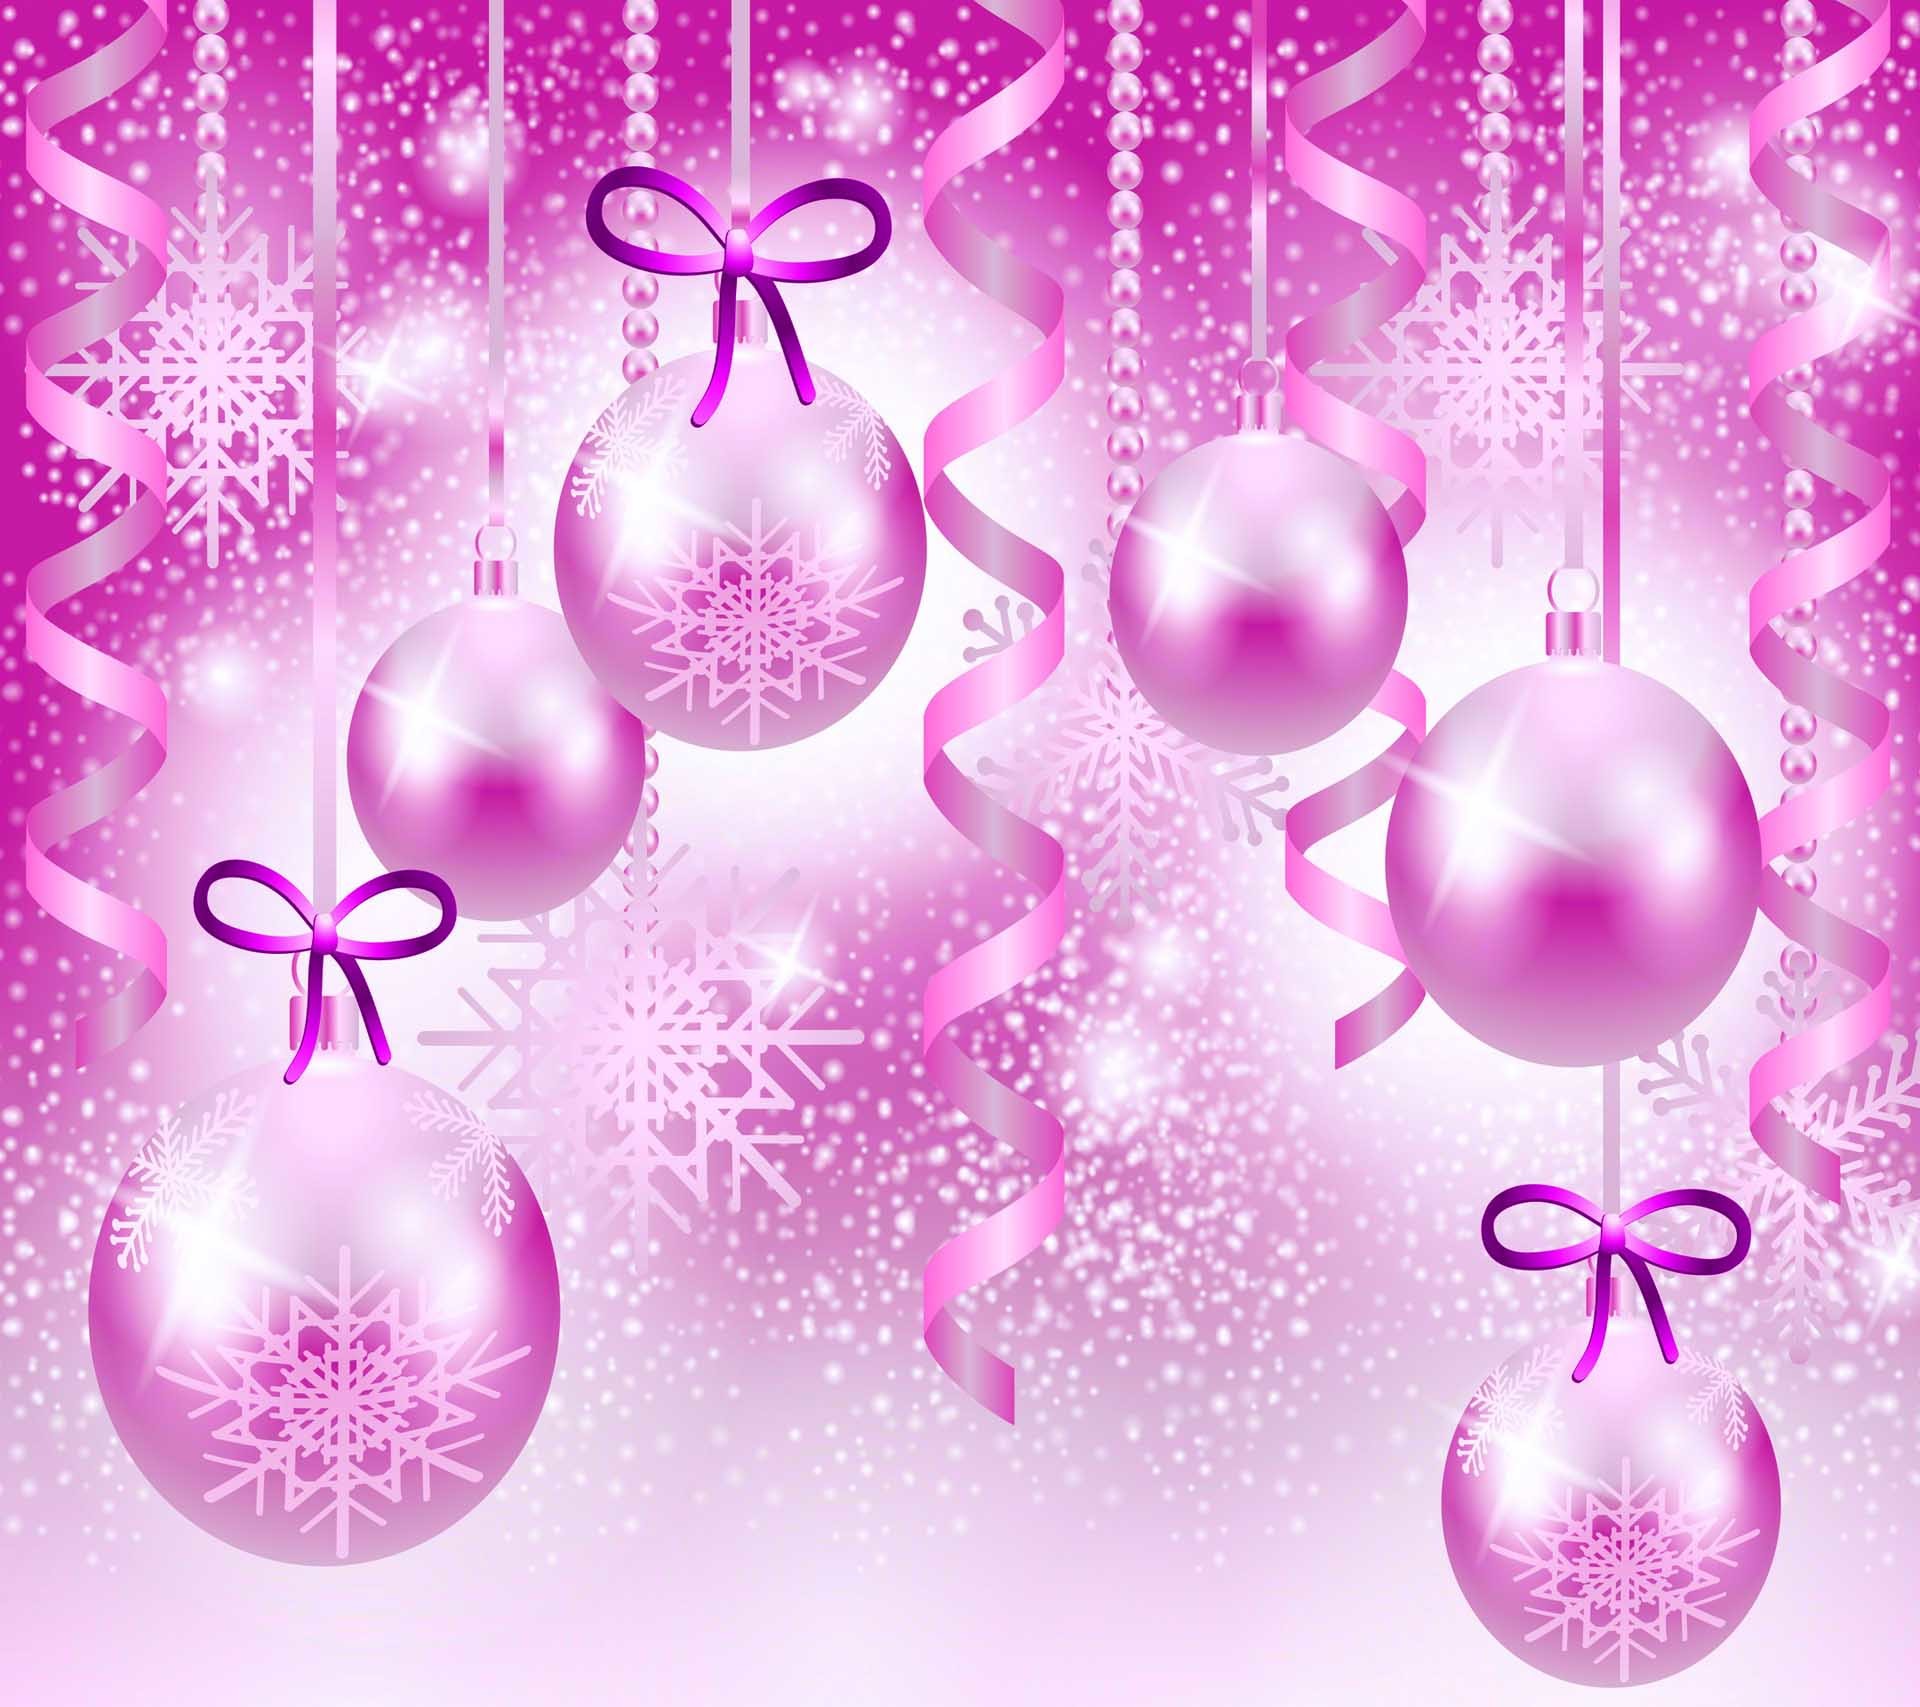 Pink Christmas iPhone Wallpapers  PixelsTalkNet